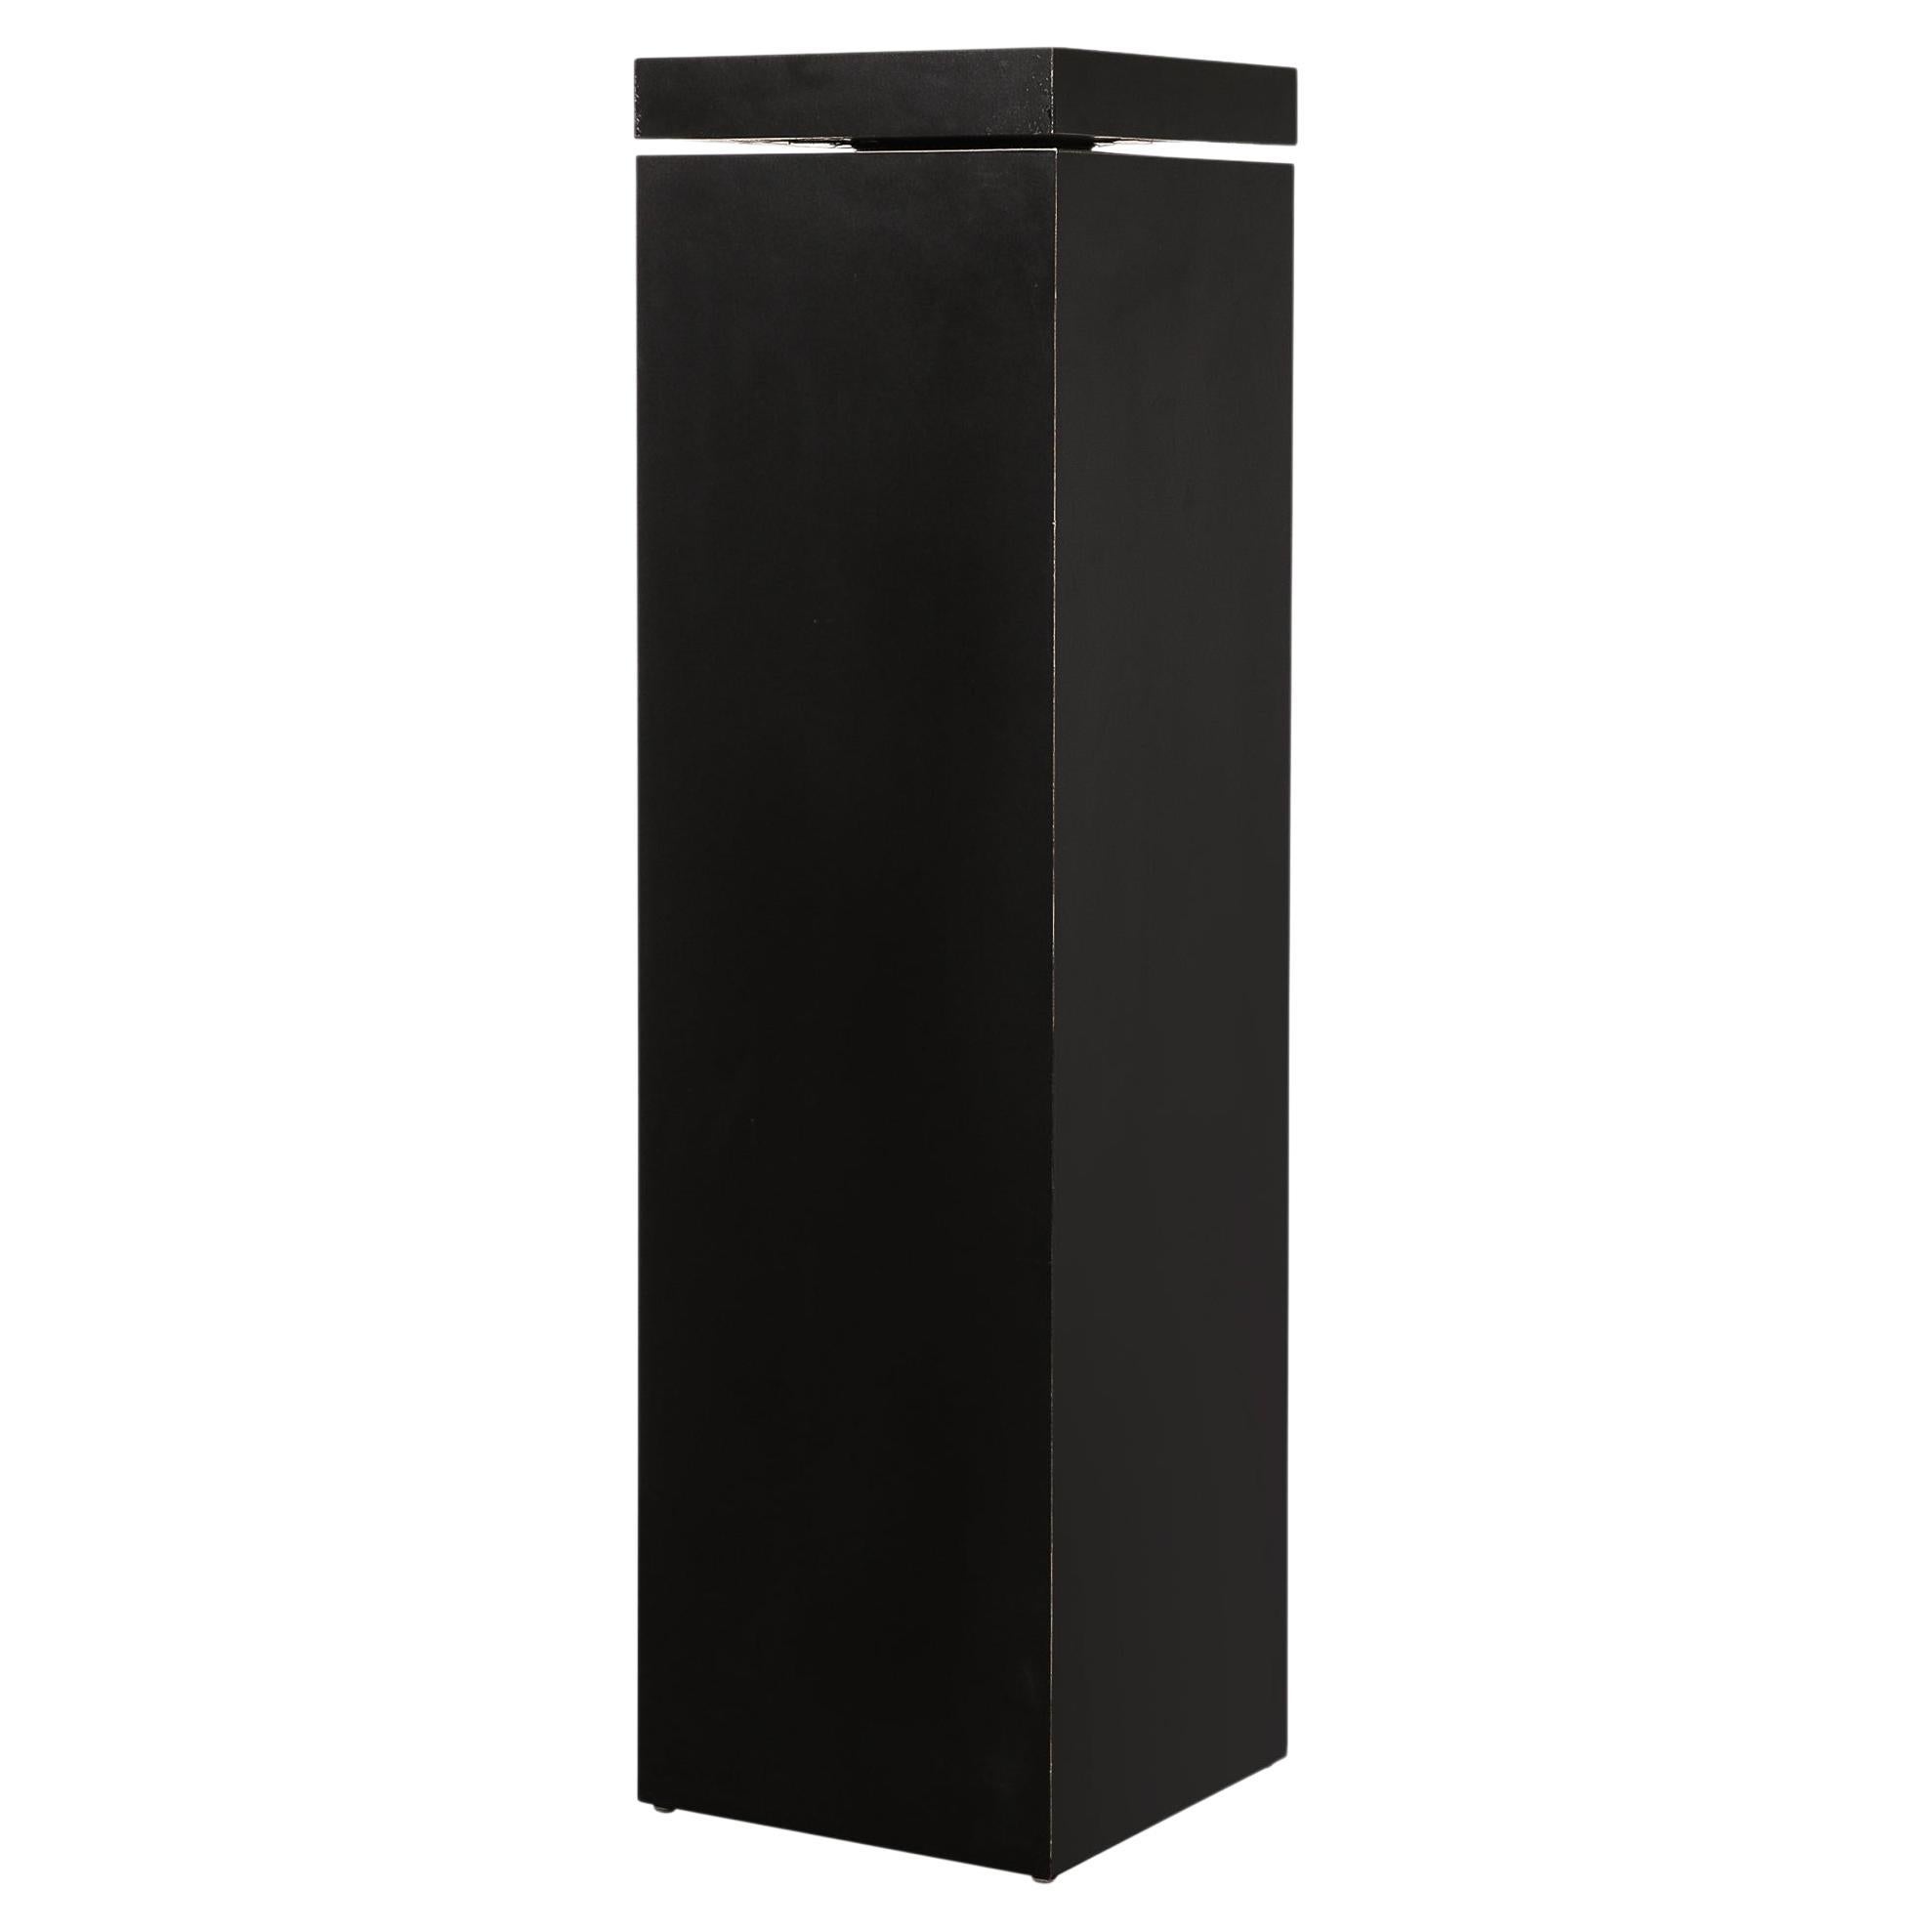 The Pedestal moderne rectiligne avec plateau pivotant noir mat  en vente